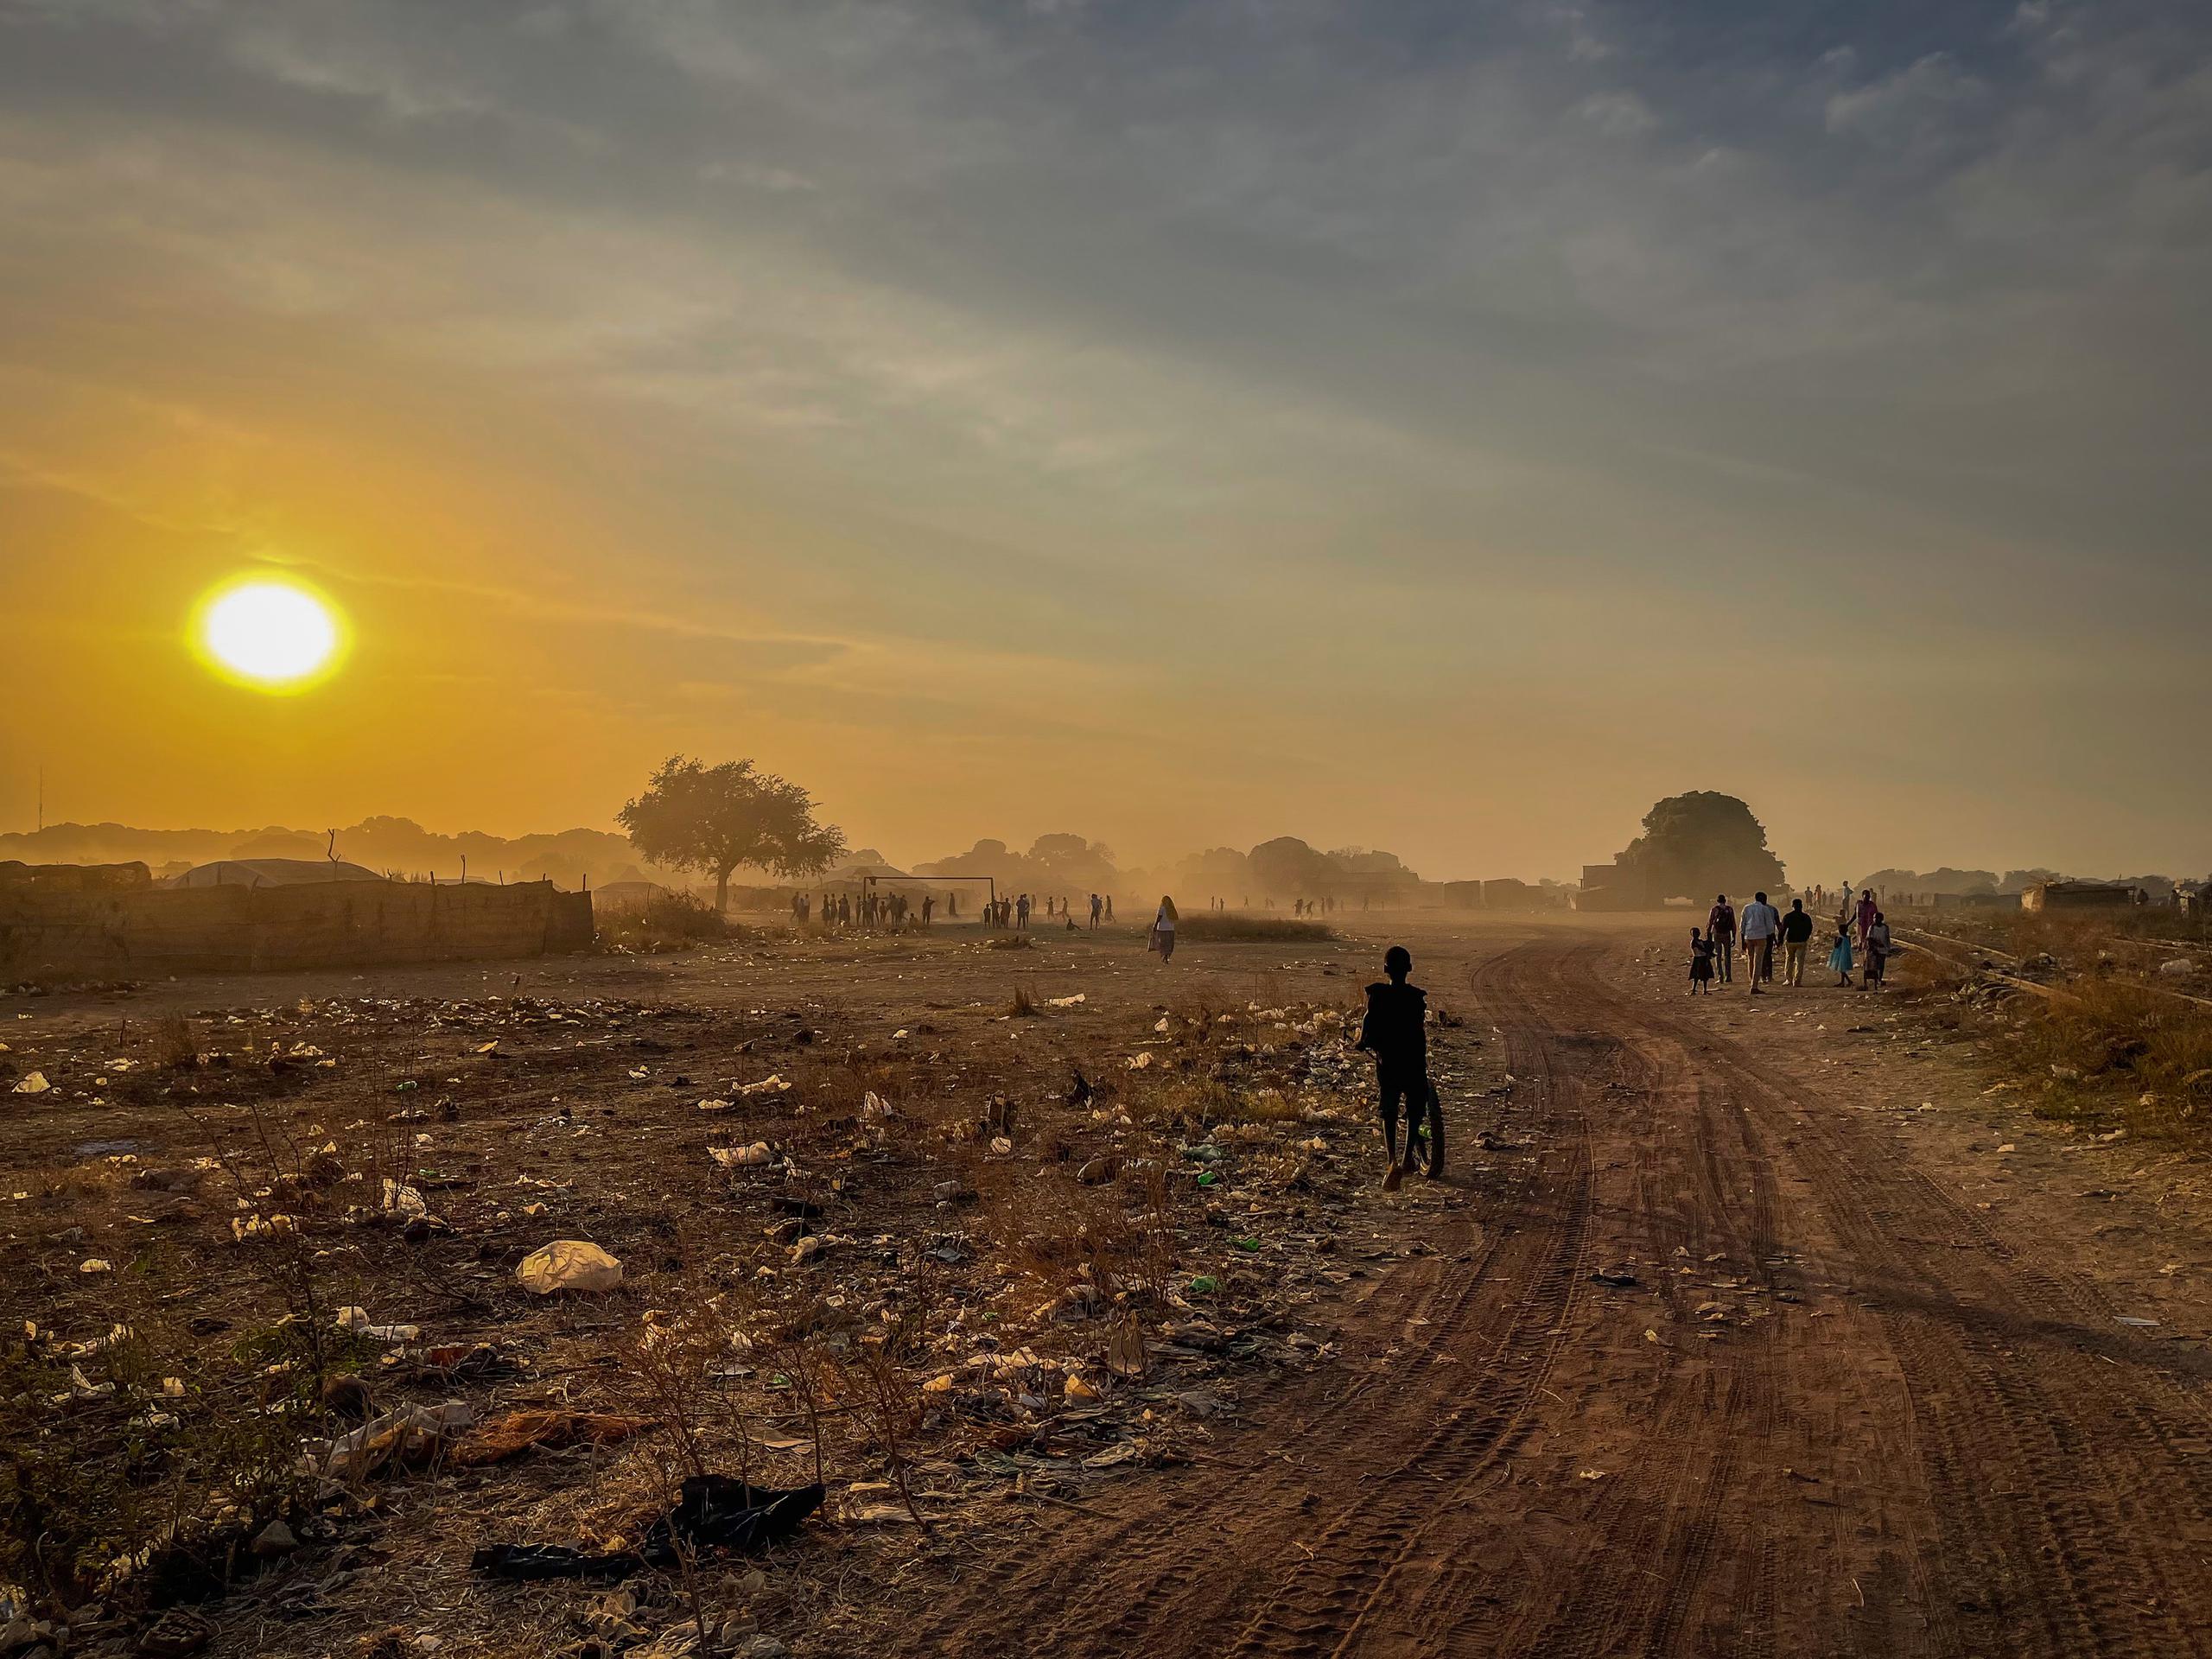 Durante la estación seca, considerada verano en Sudán del Sur, el estado de Jonglei sufre un continuo estado de violencia entre las comunidades de pastores locales de las tribus Dinka, Nuer y Murle, debido a incursiones que tienen como objetivo saquear ganado, así como venganzas tribales y conflictos por los recursos.